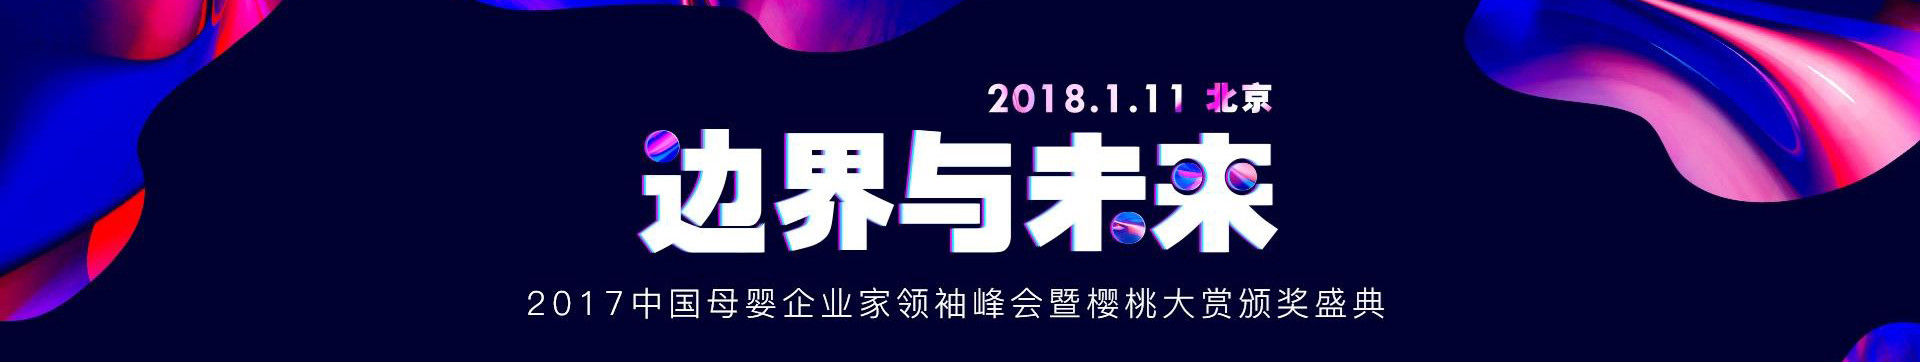 2017中国母婴企业家领袖峰会暨樱桃大赏颁奖盛典